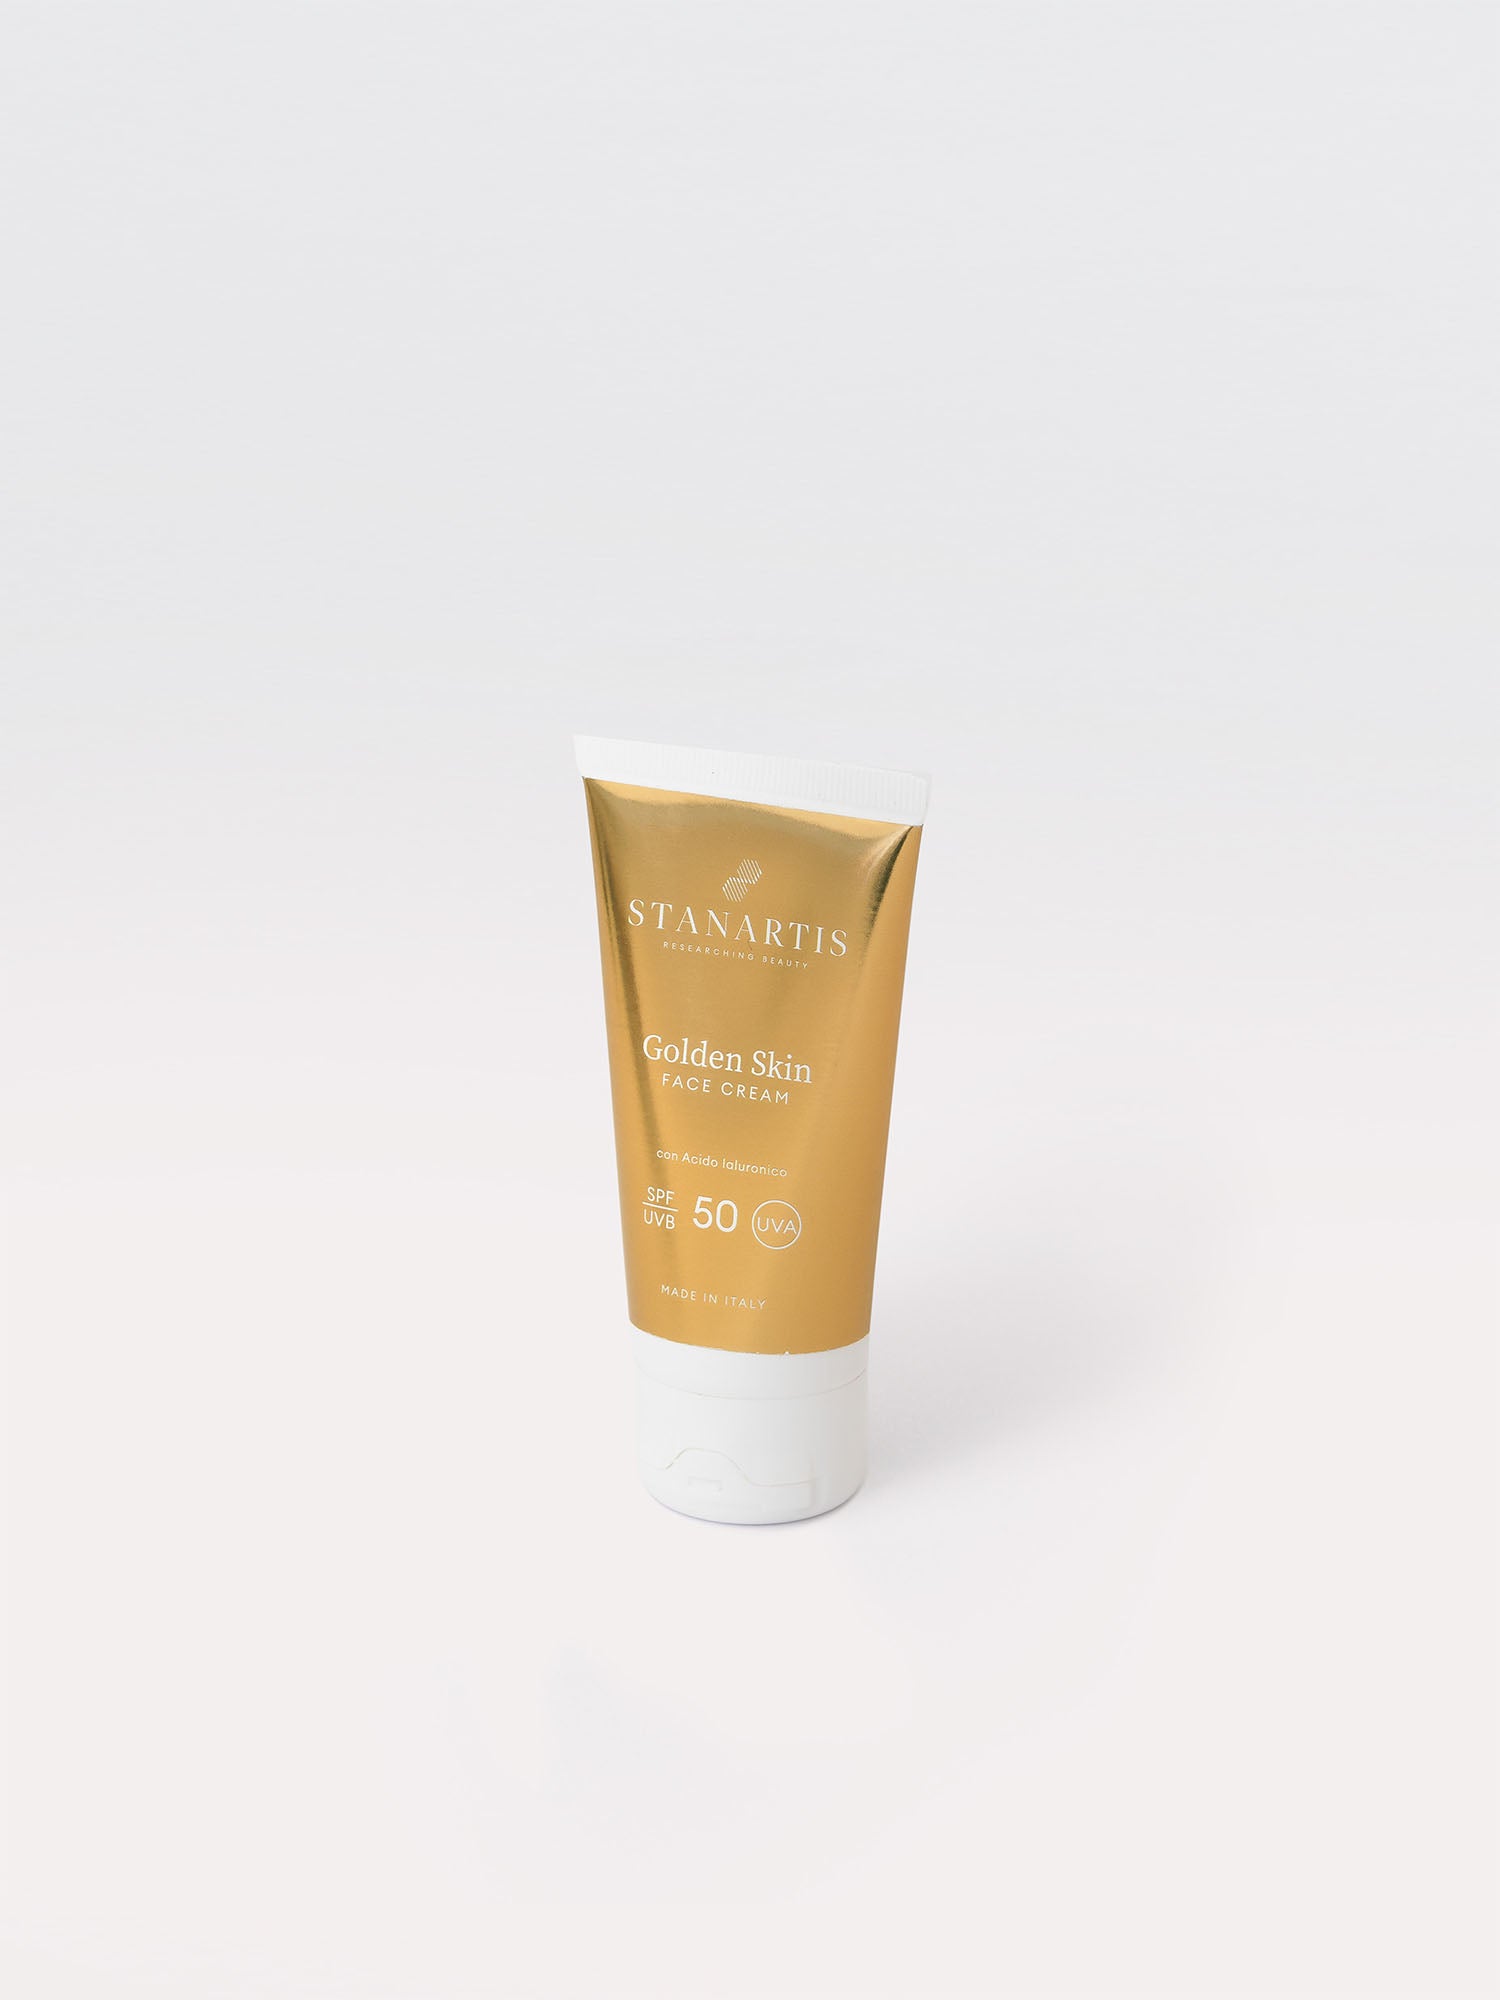 Crema Solare Viso Protezione 50 Golden Skin, Stanartis